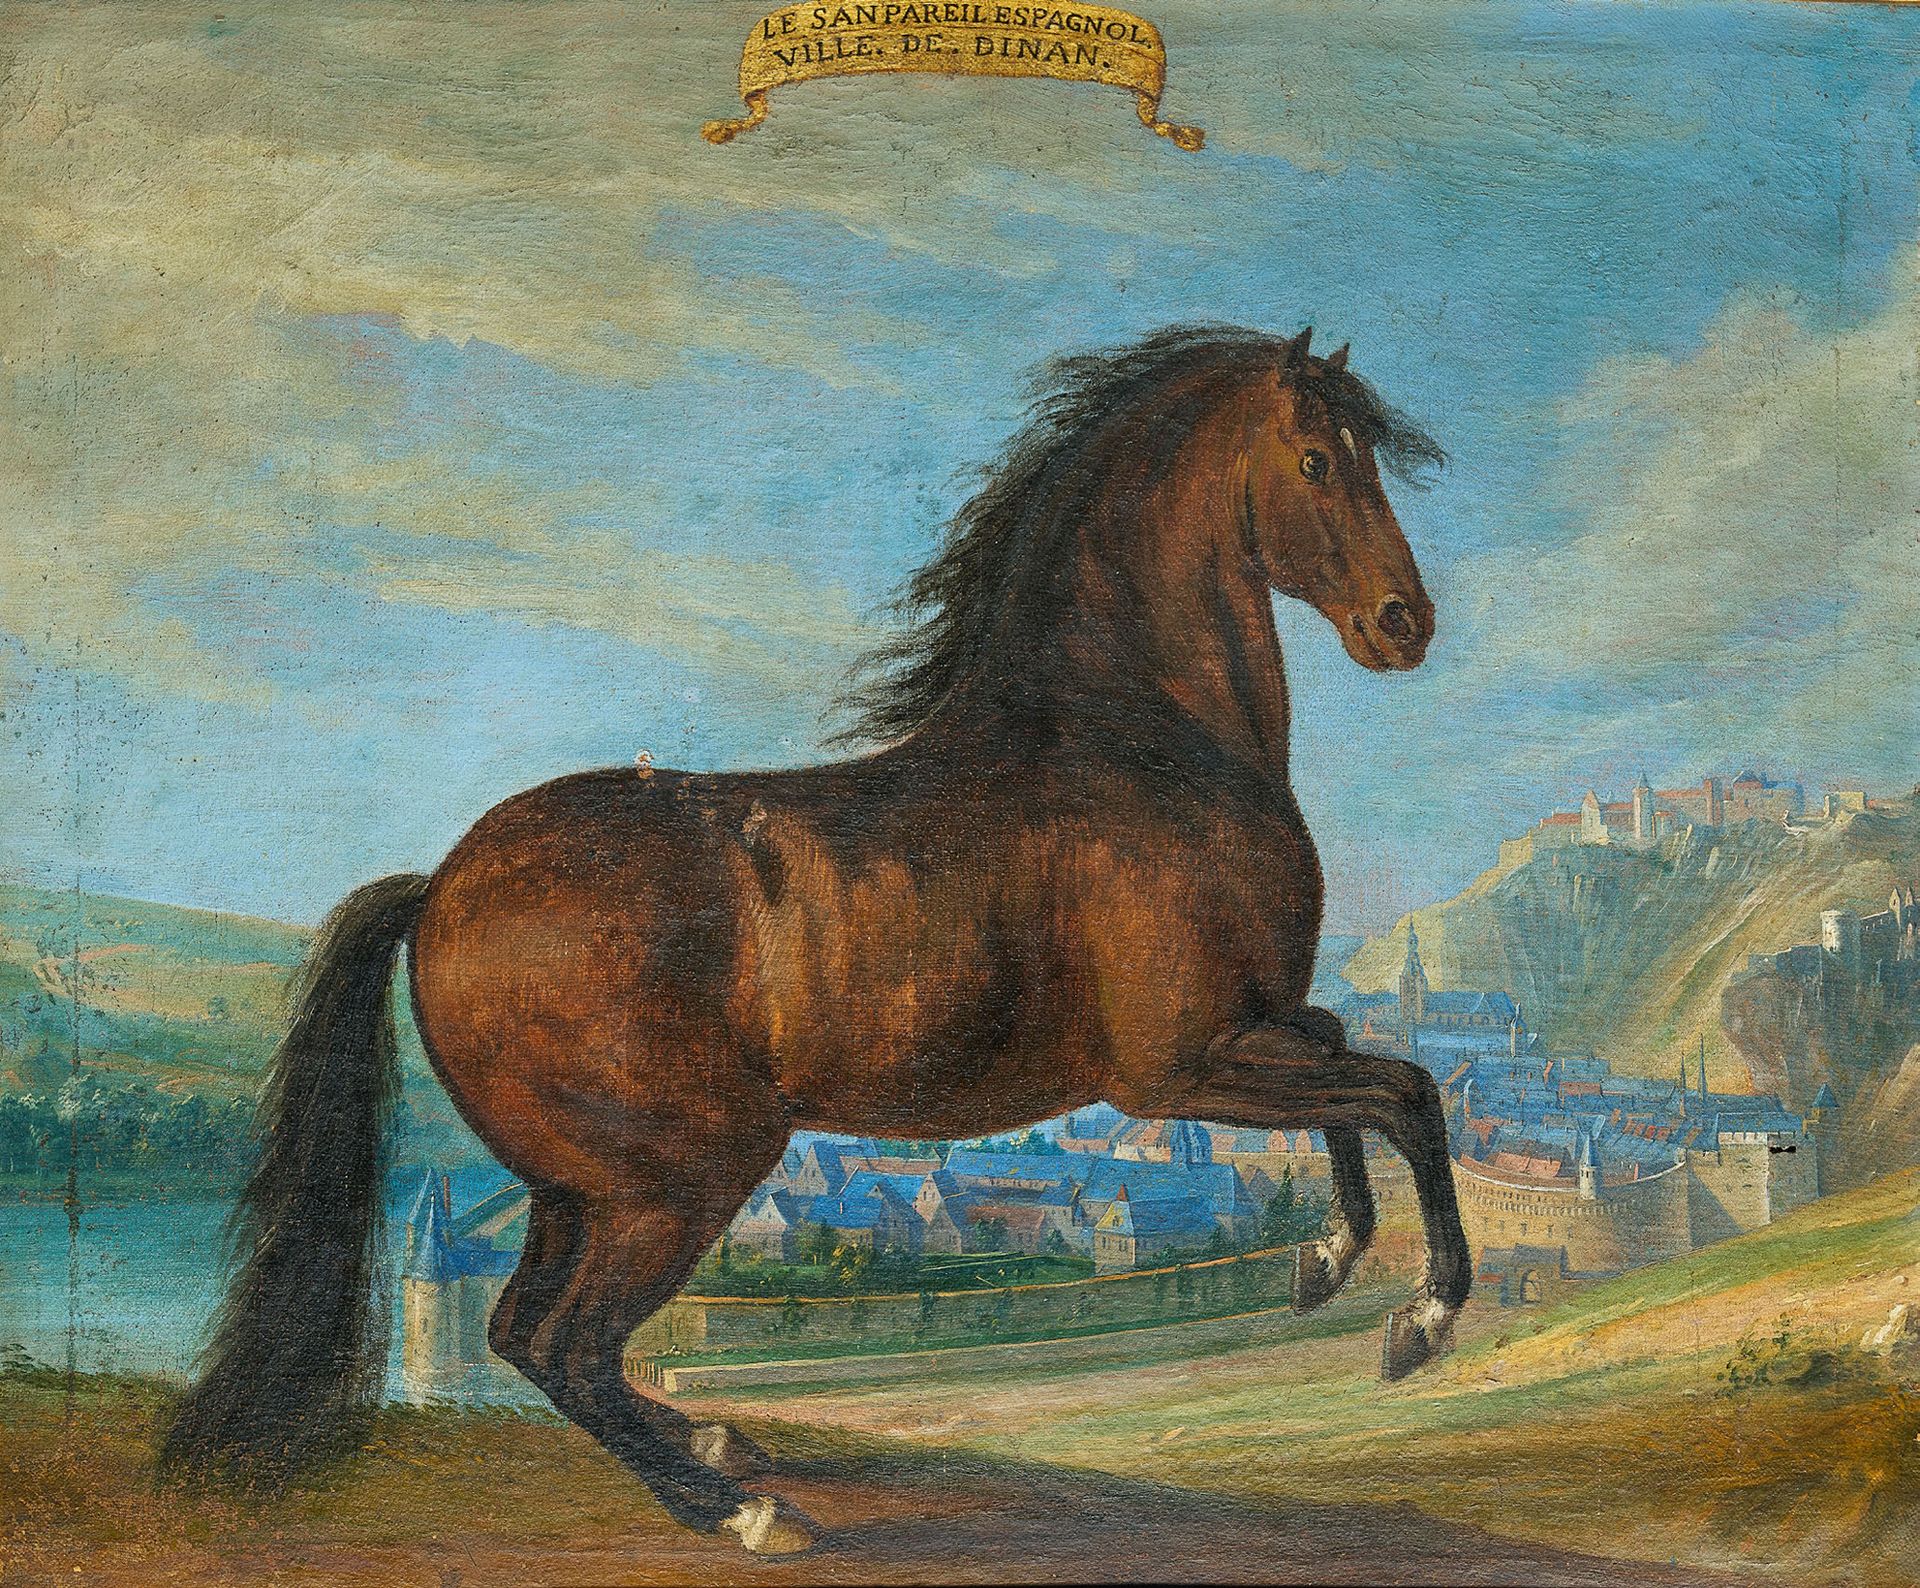 ÉCOLE FRANÇAISE DU XVIIe SIÈCLE 迪南镇前的 "Le San Pareil Espagnol "马的肖像
布面油画
43 x 53&hellip;